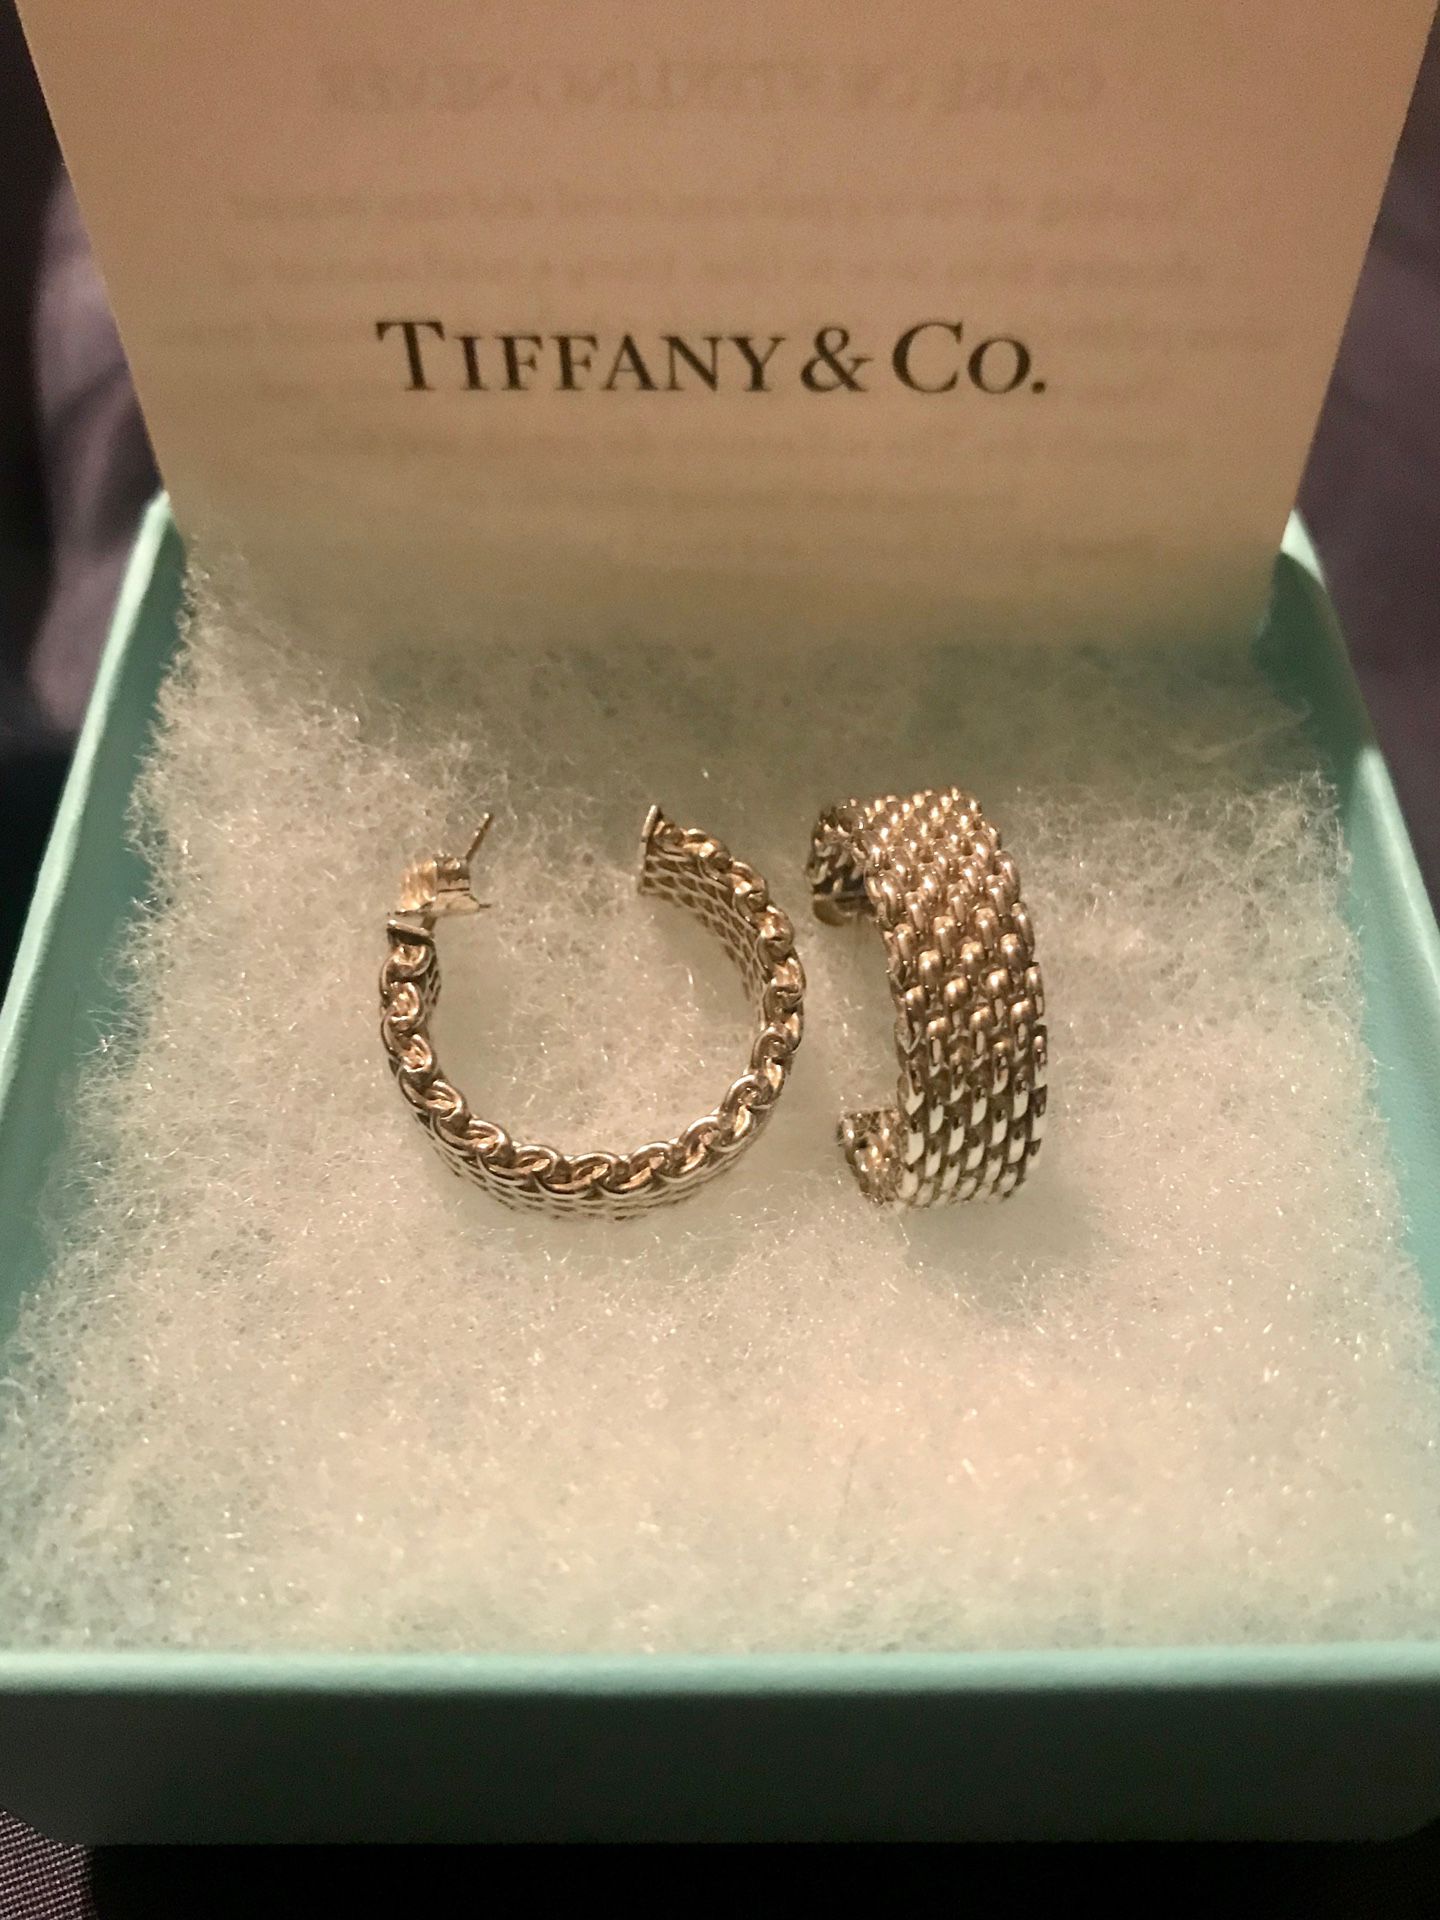 Tiffany & Co. sterling silver earrings